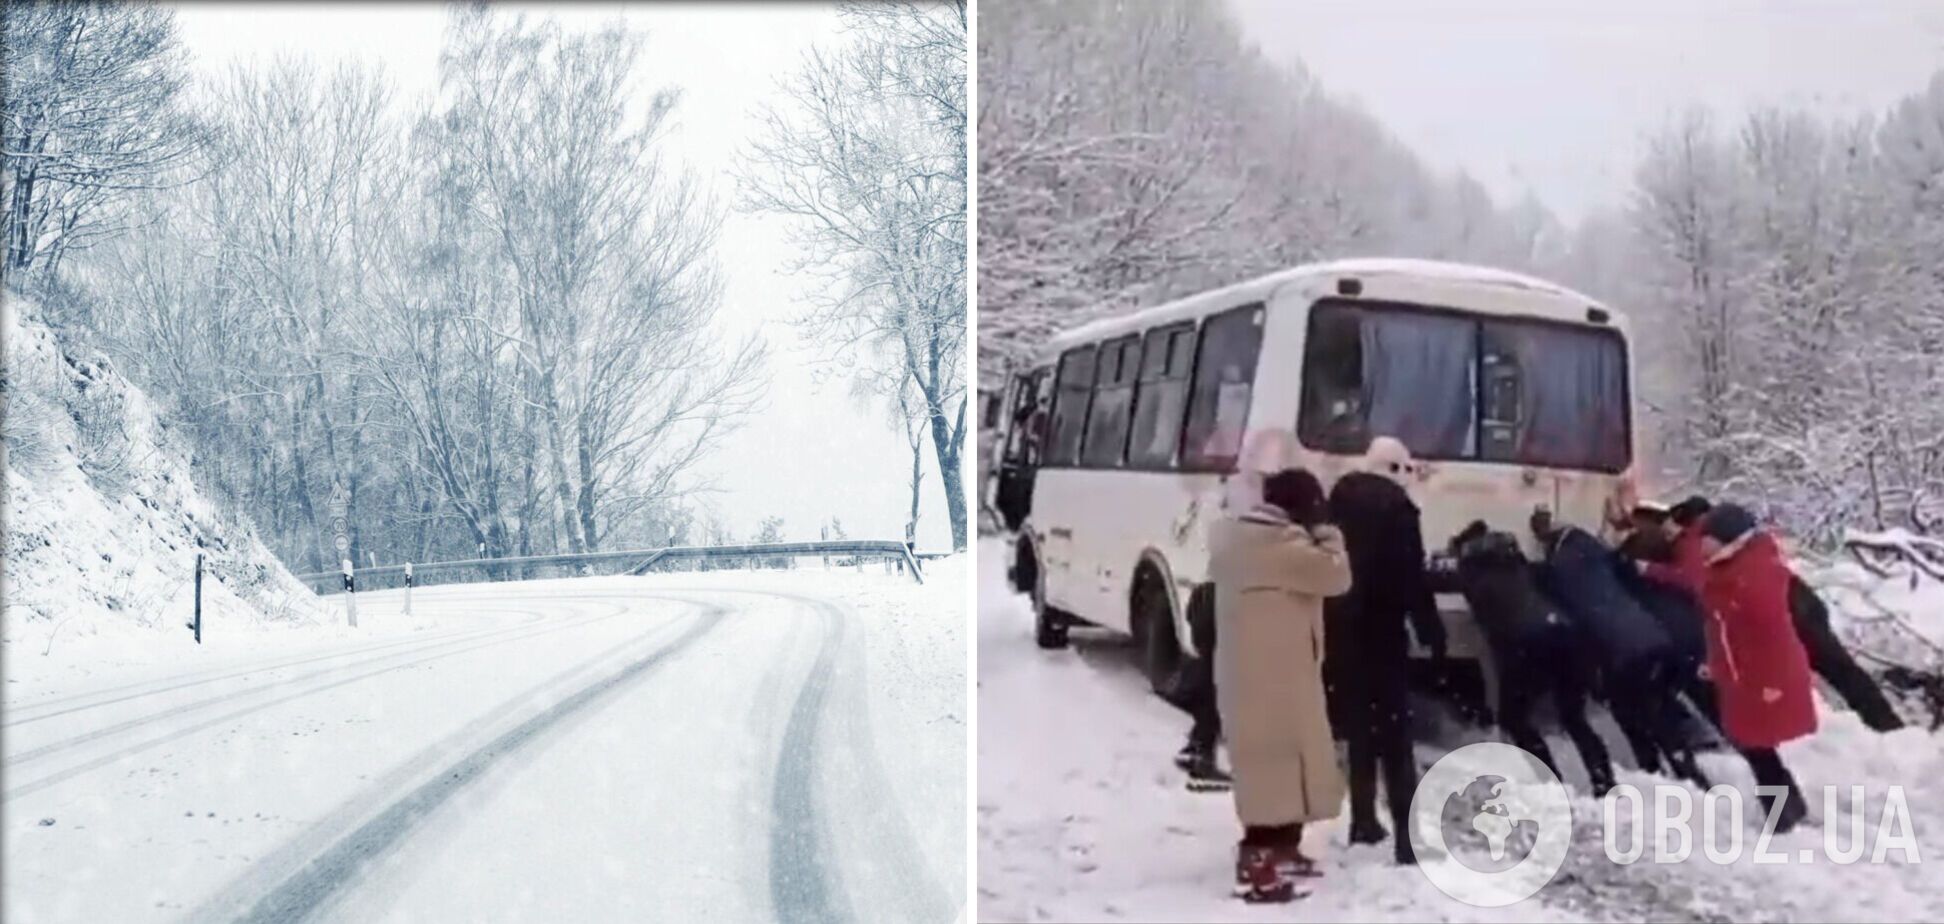 Автобус застрял на нечищеной от снега дороге